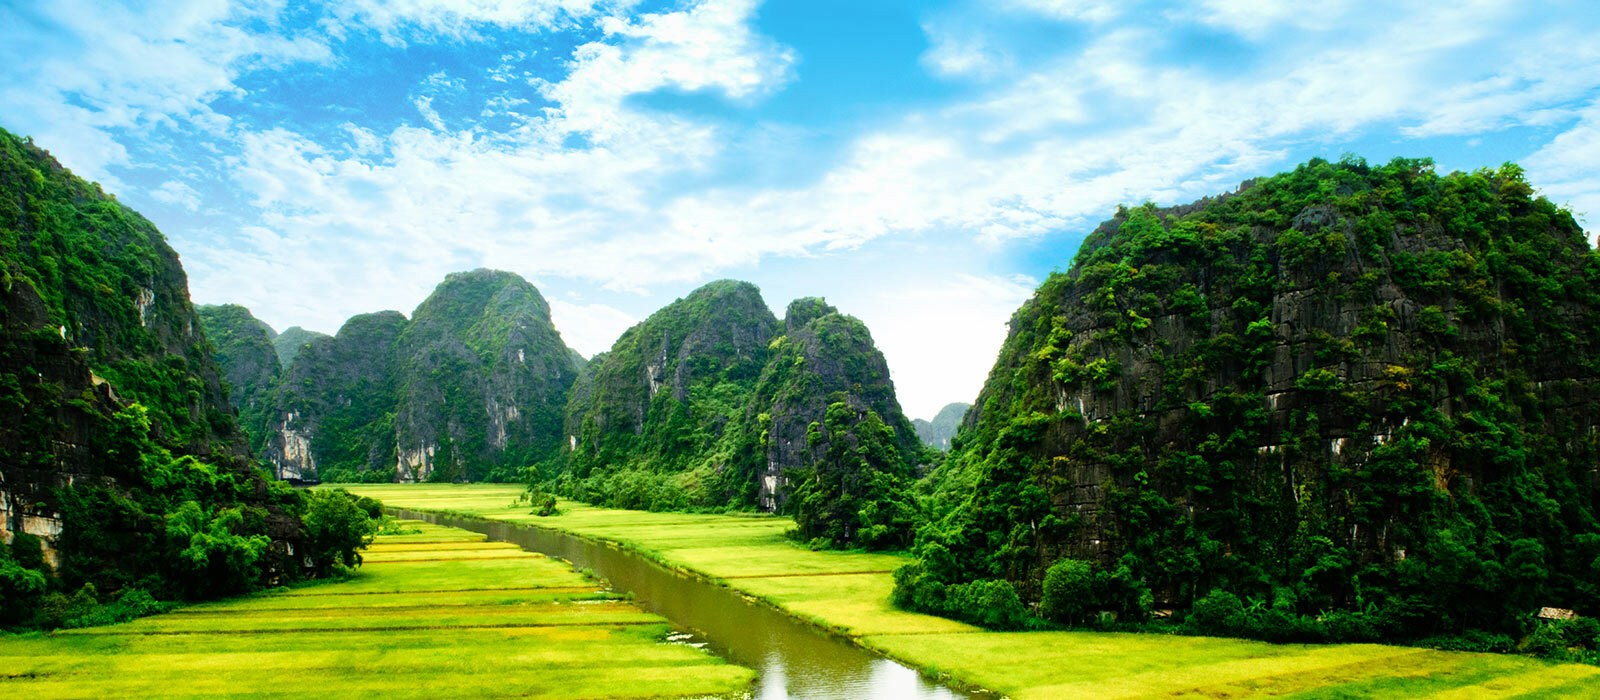 Vietnam grandeur nature